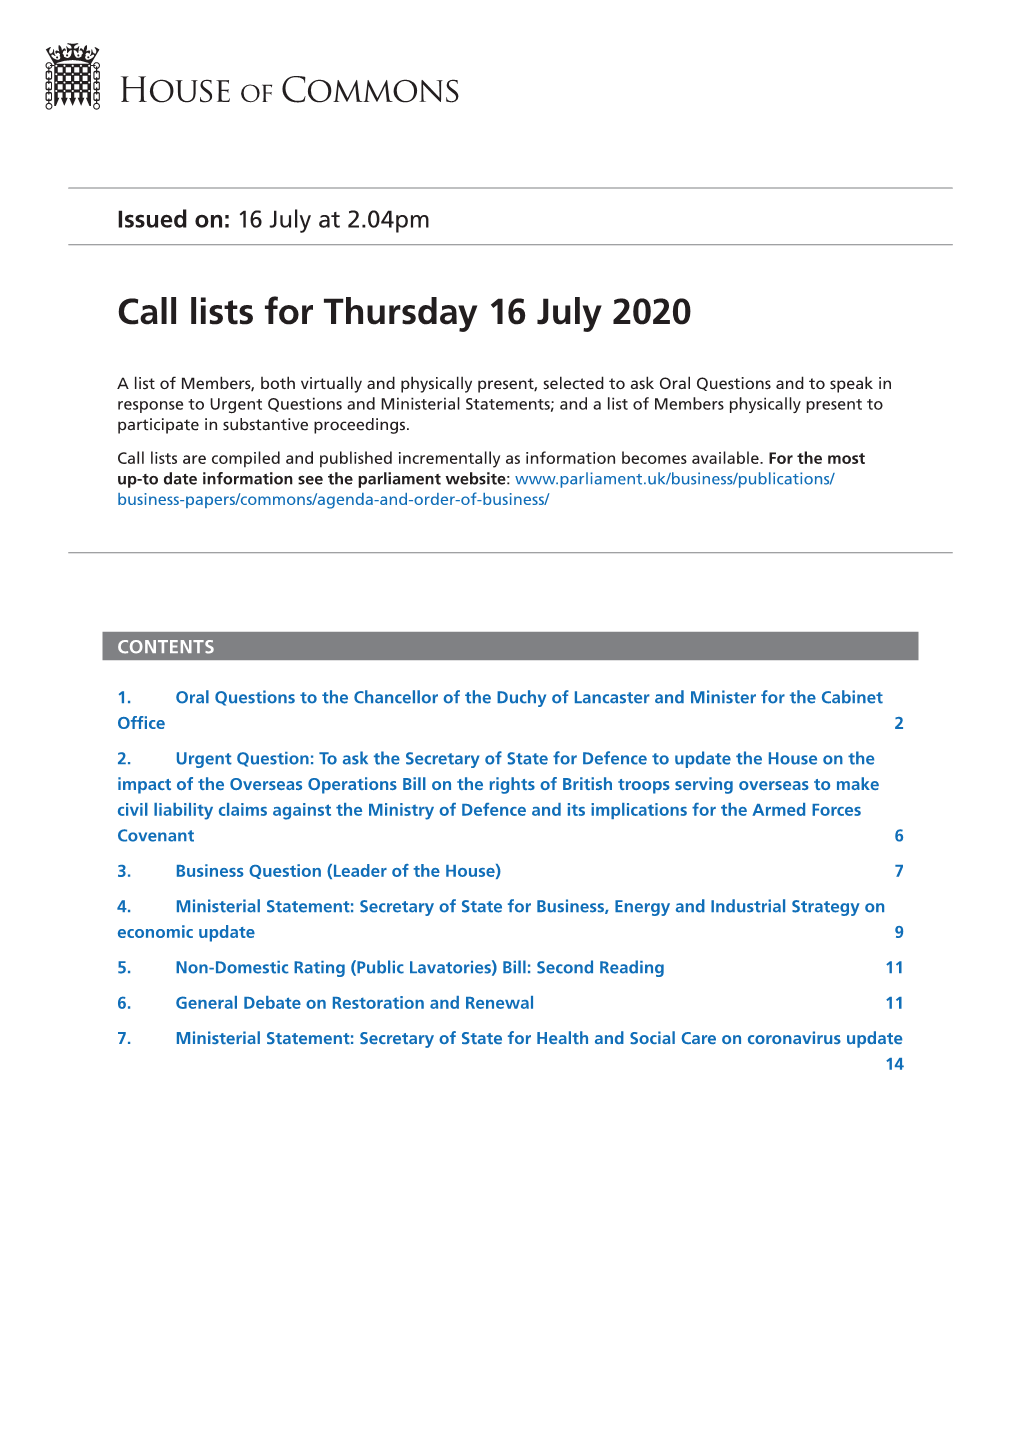 Call List for Thu 16 Jul 2020